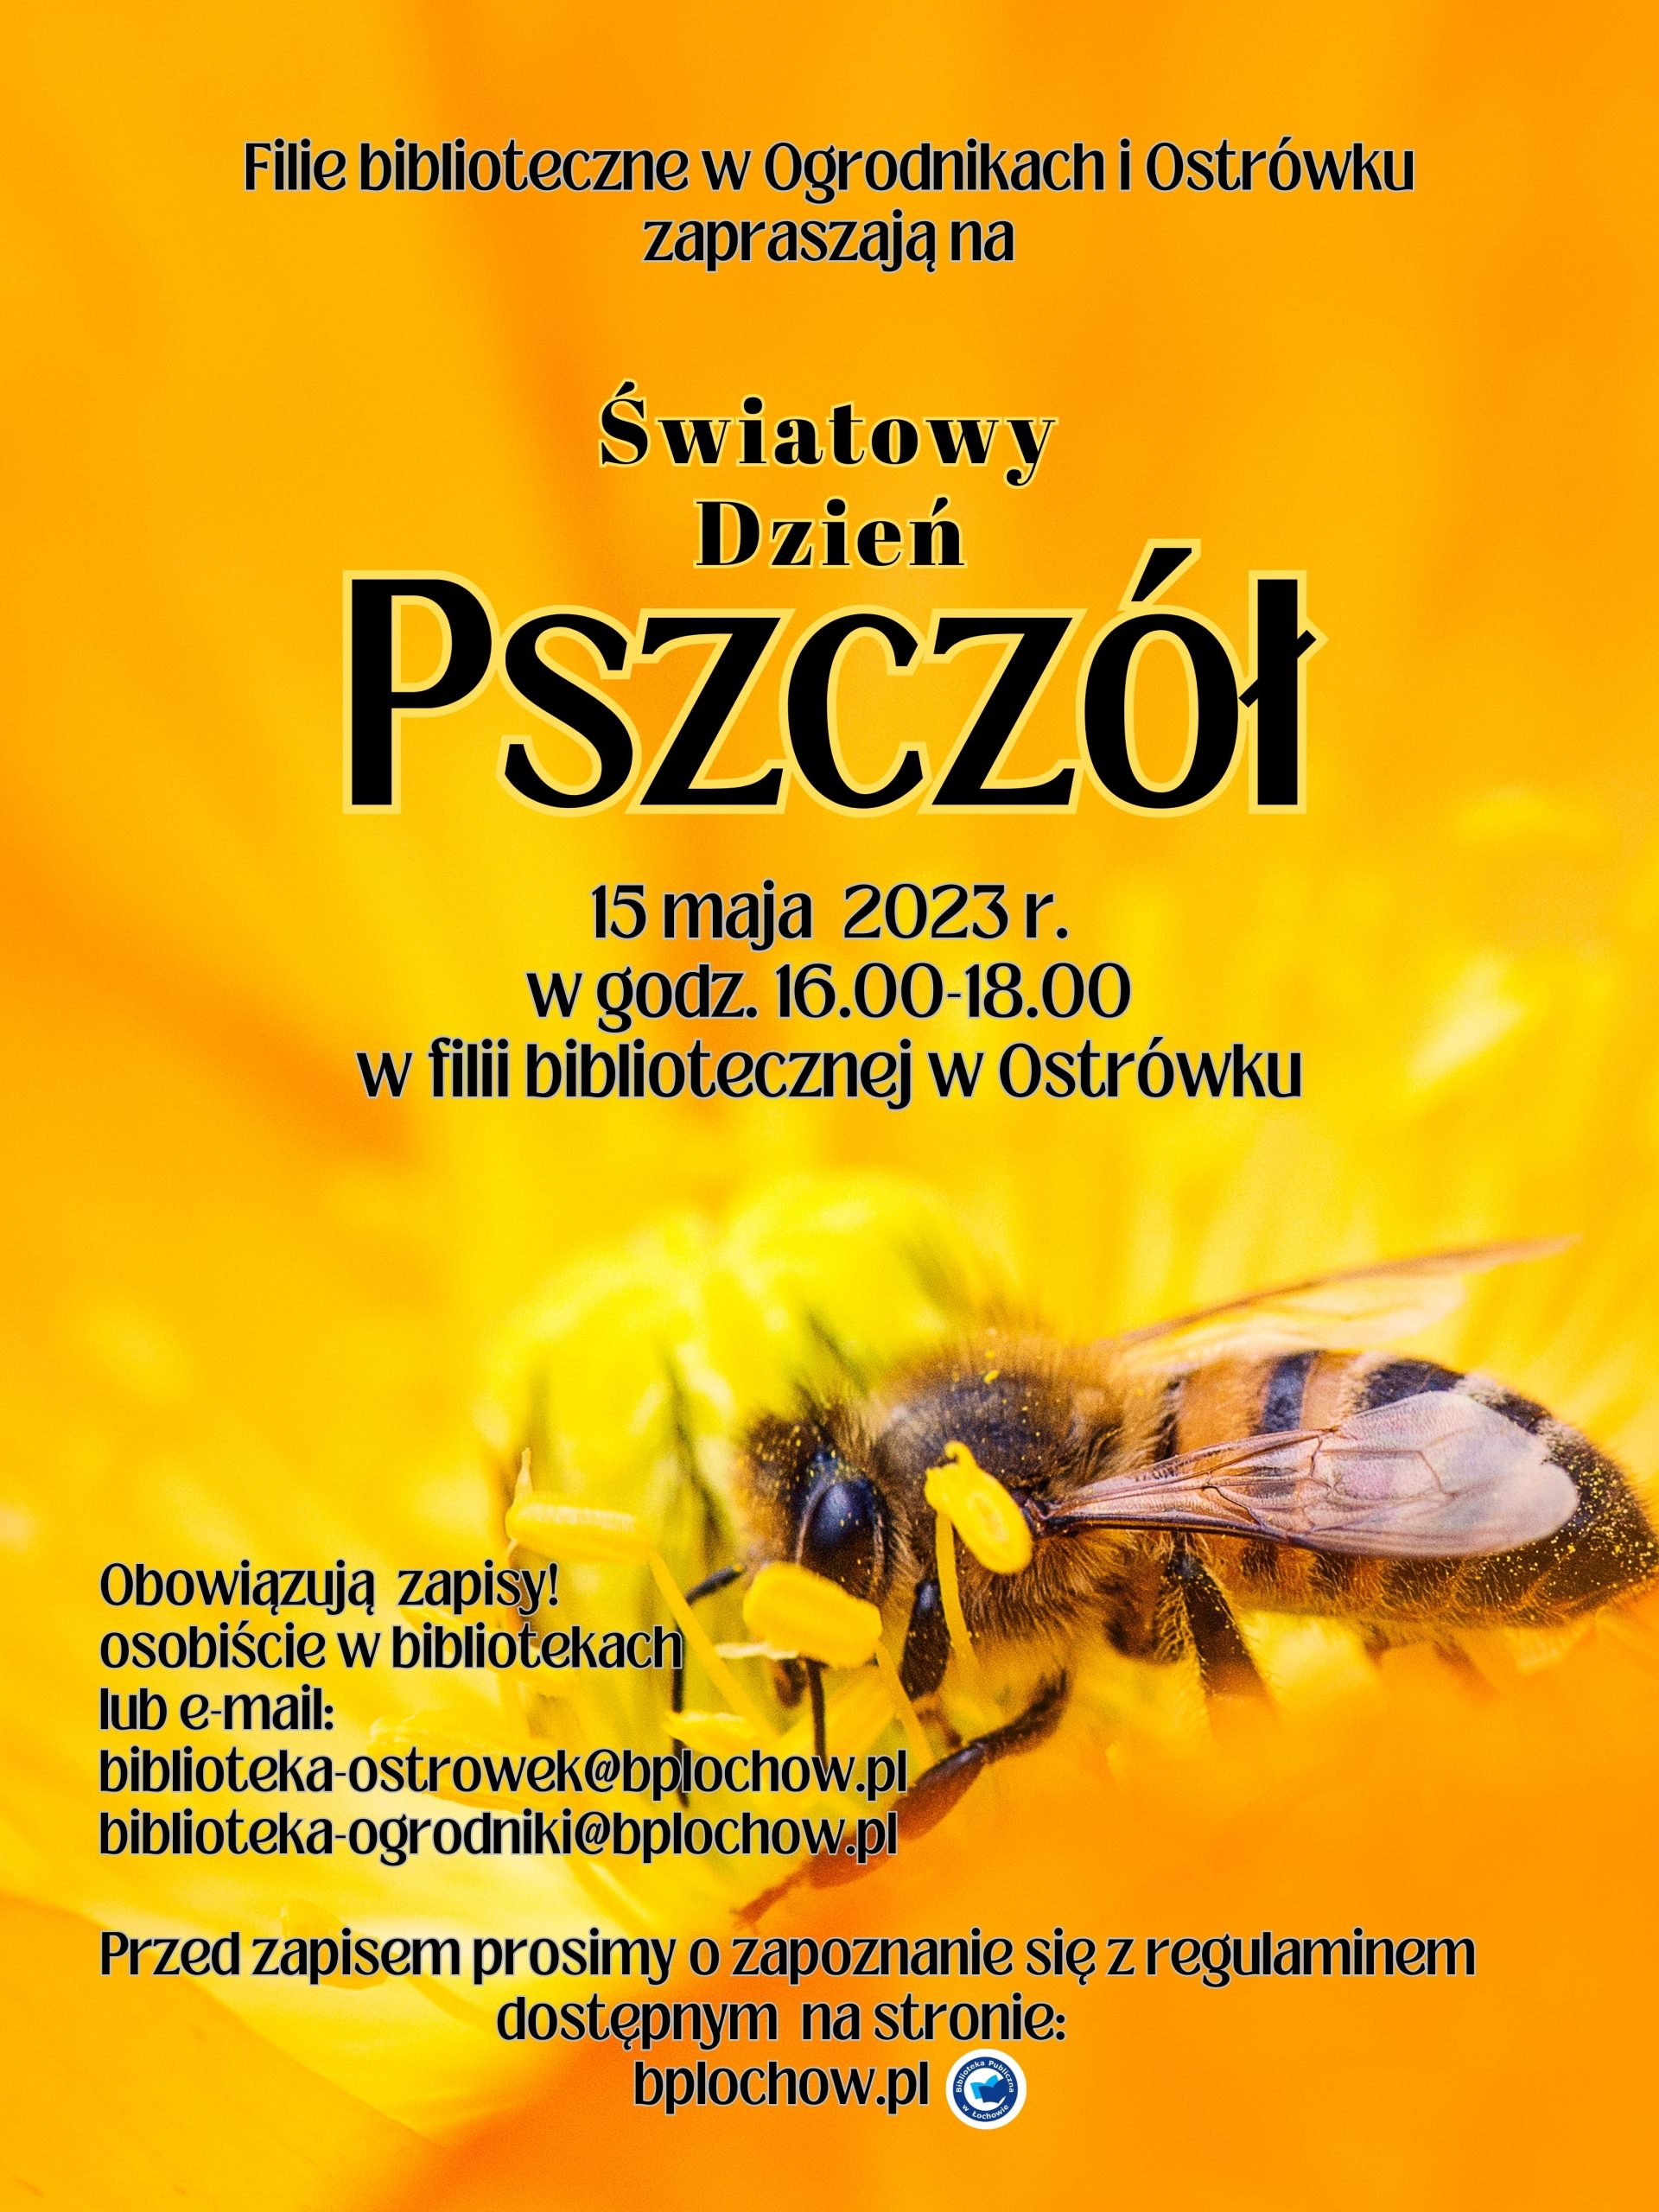 Spotkanie z pszczelarzem-zaproszenie.